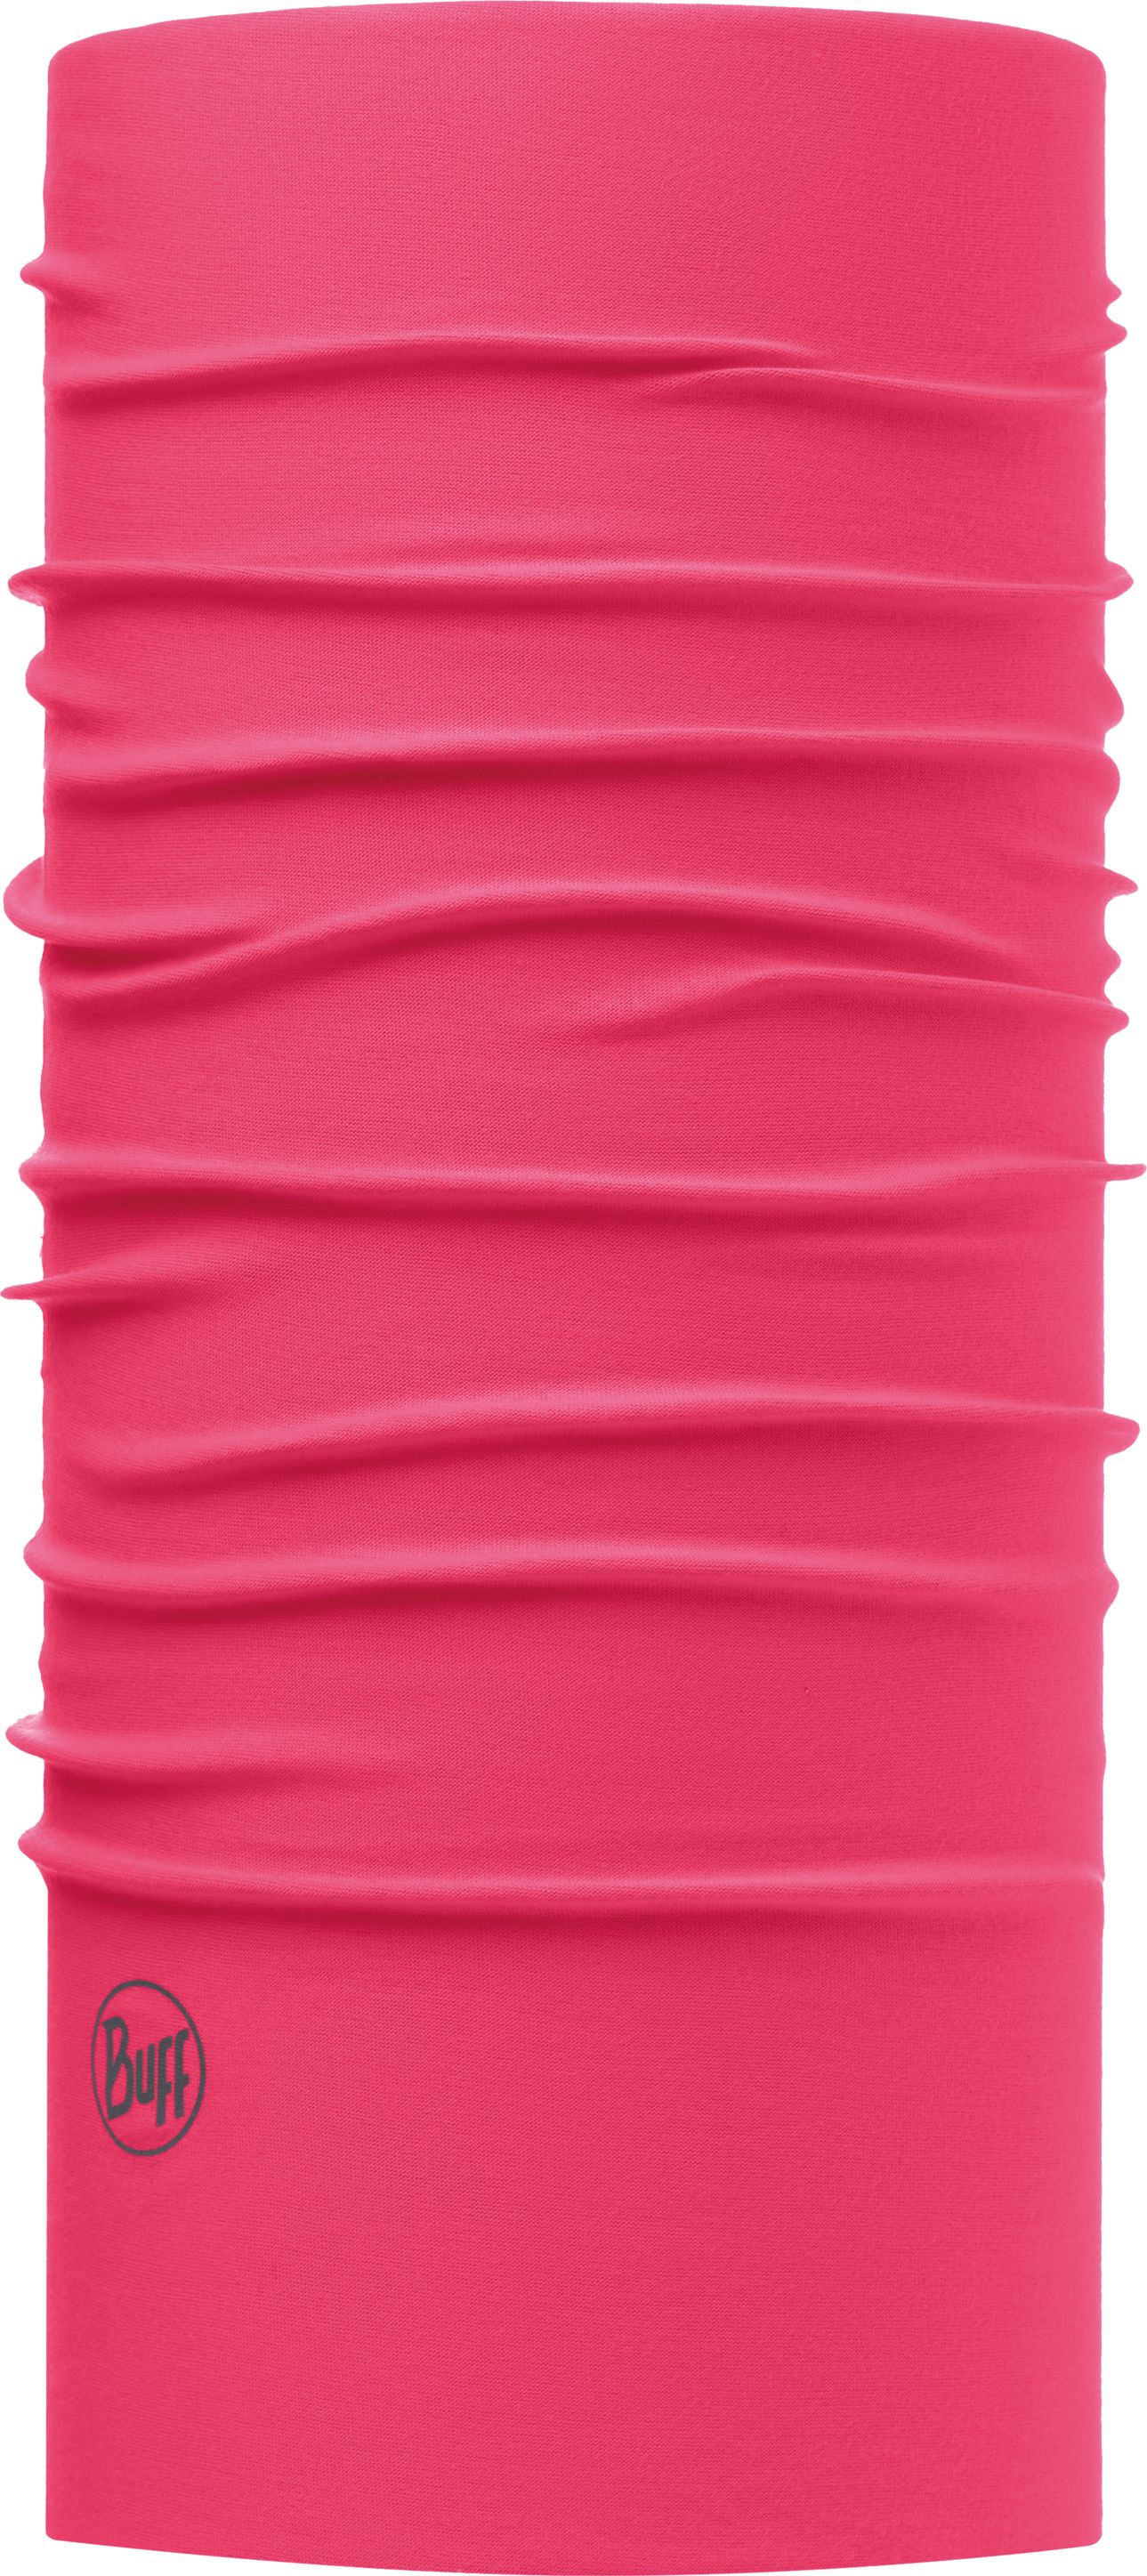 Бандана Buff UV Protection Solid Wild Pink, цвет: розовый. 111426.540.10.00. Размер универсальный